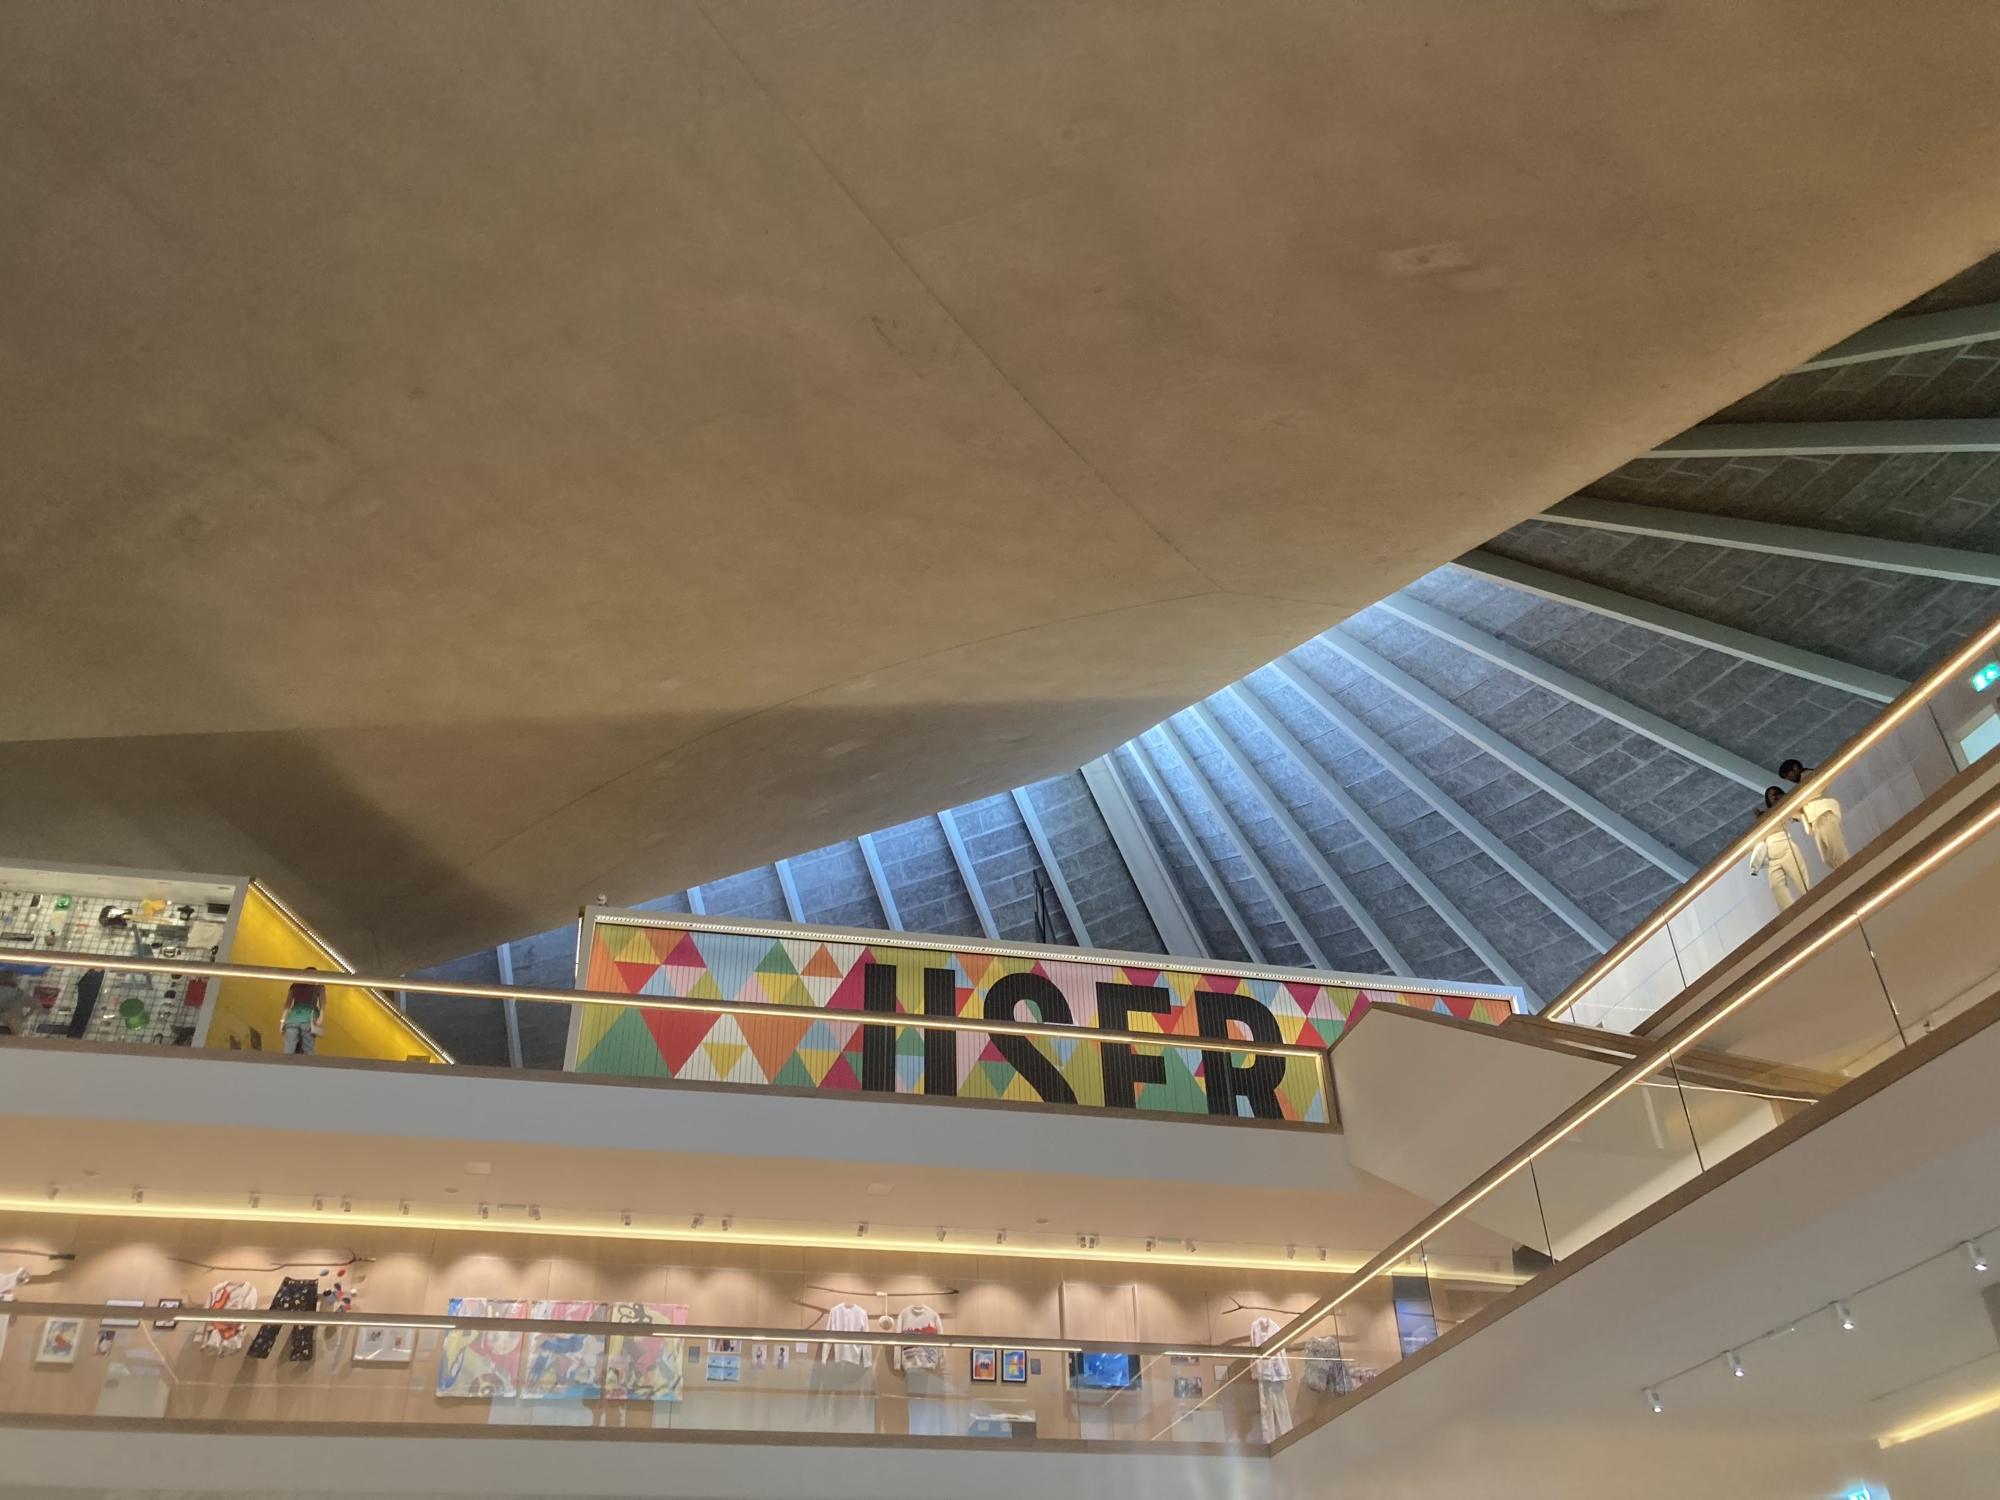 Blick von unten schräg Richtung Dach des Design Museums, rechts oben eine Textwand mit dem Schriftzug User, im Stockwerk darunter ist Kleidung aus der Modeausstellung zu sehen